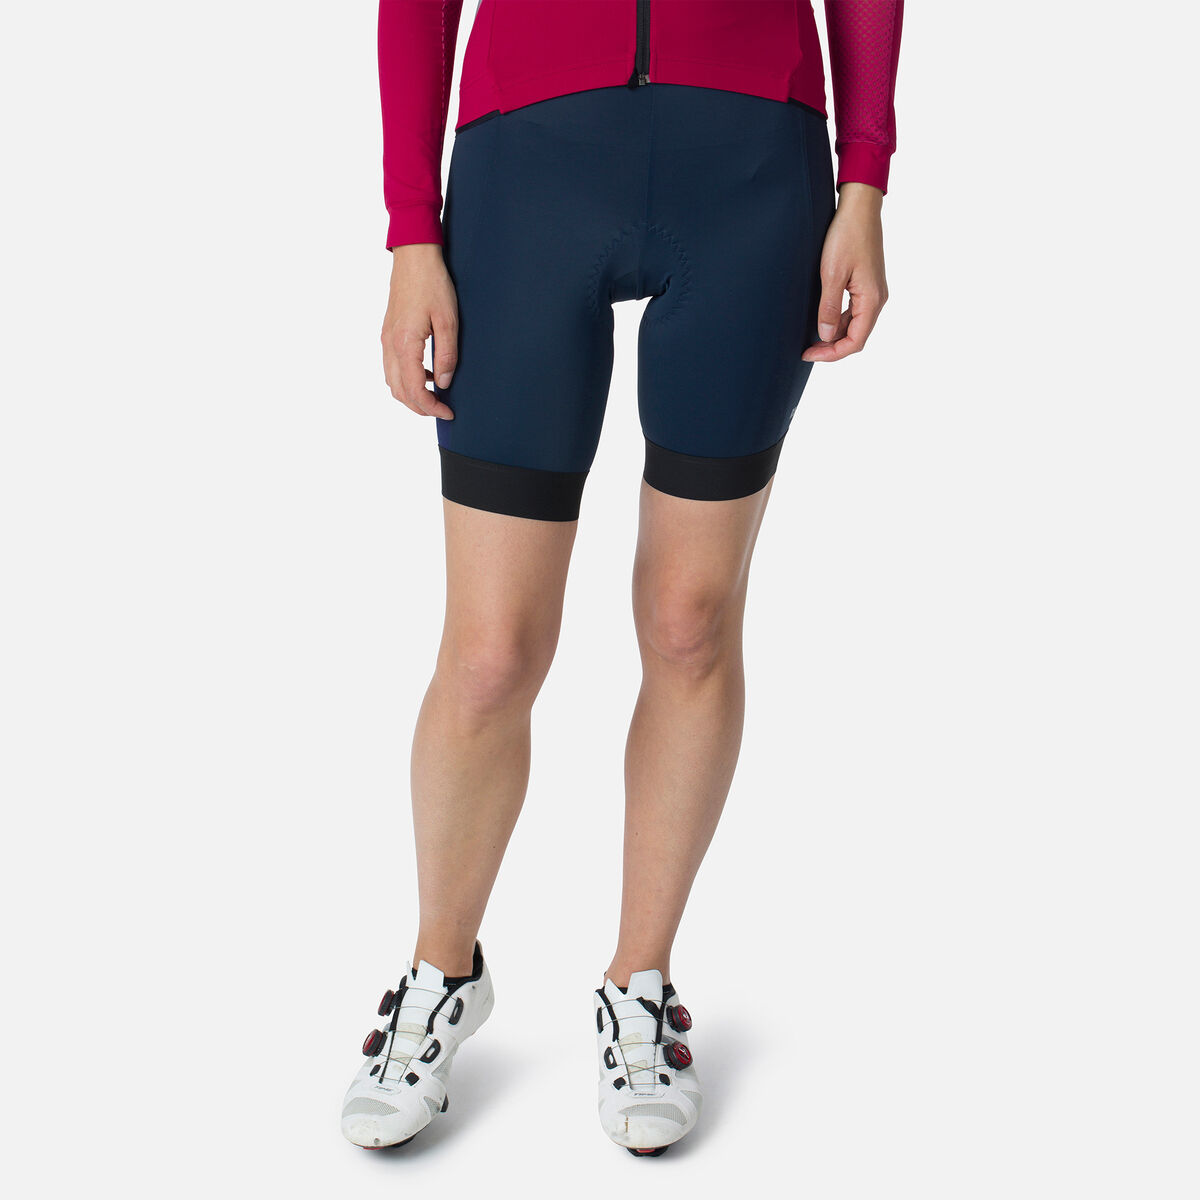 Women's Cycling Bib Shorts